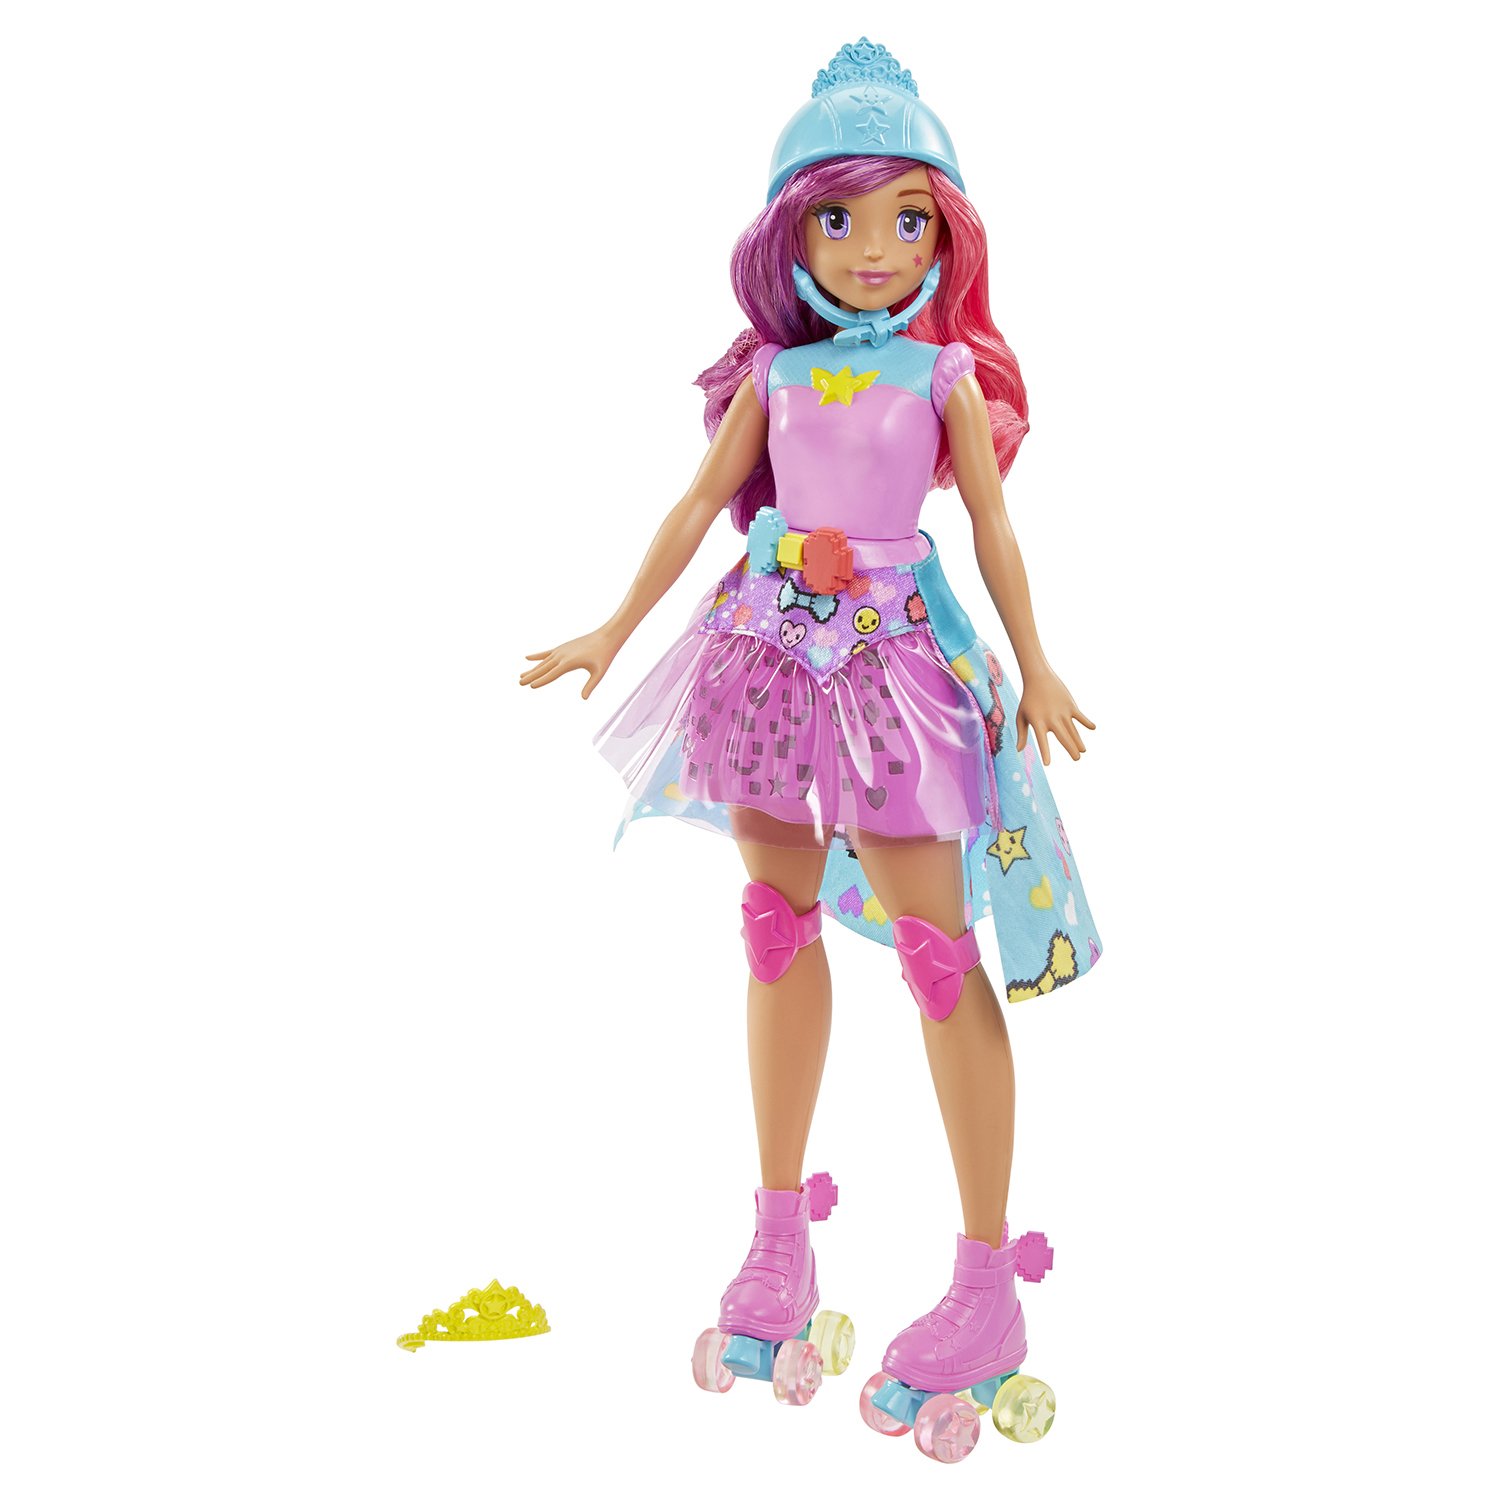 Интерактивная кукла Barbie Виртуальный мир Повтори цвета, 29 см, DTW00